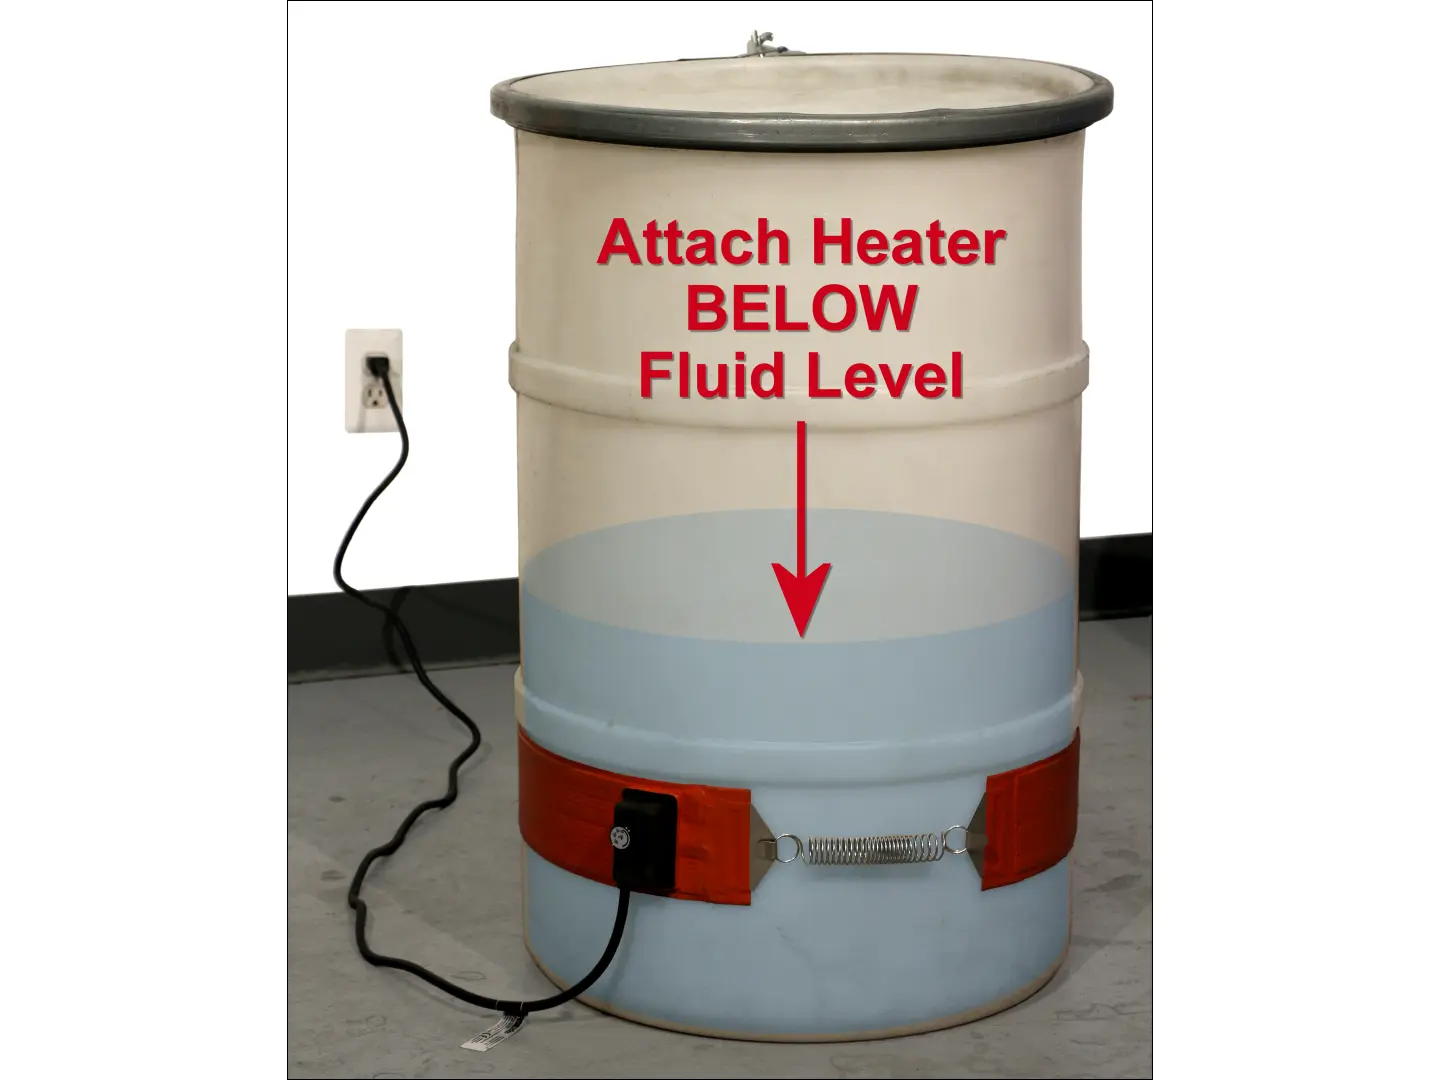 IMPORTANT: Always attach drum heater BELOW fluid level inside drum